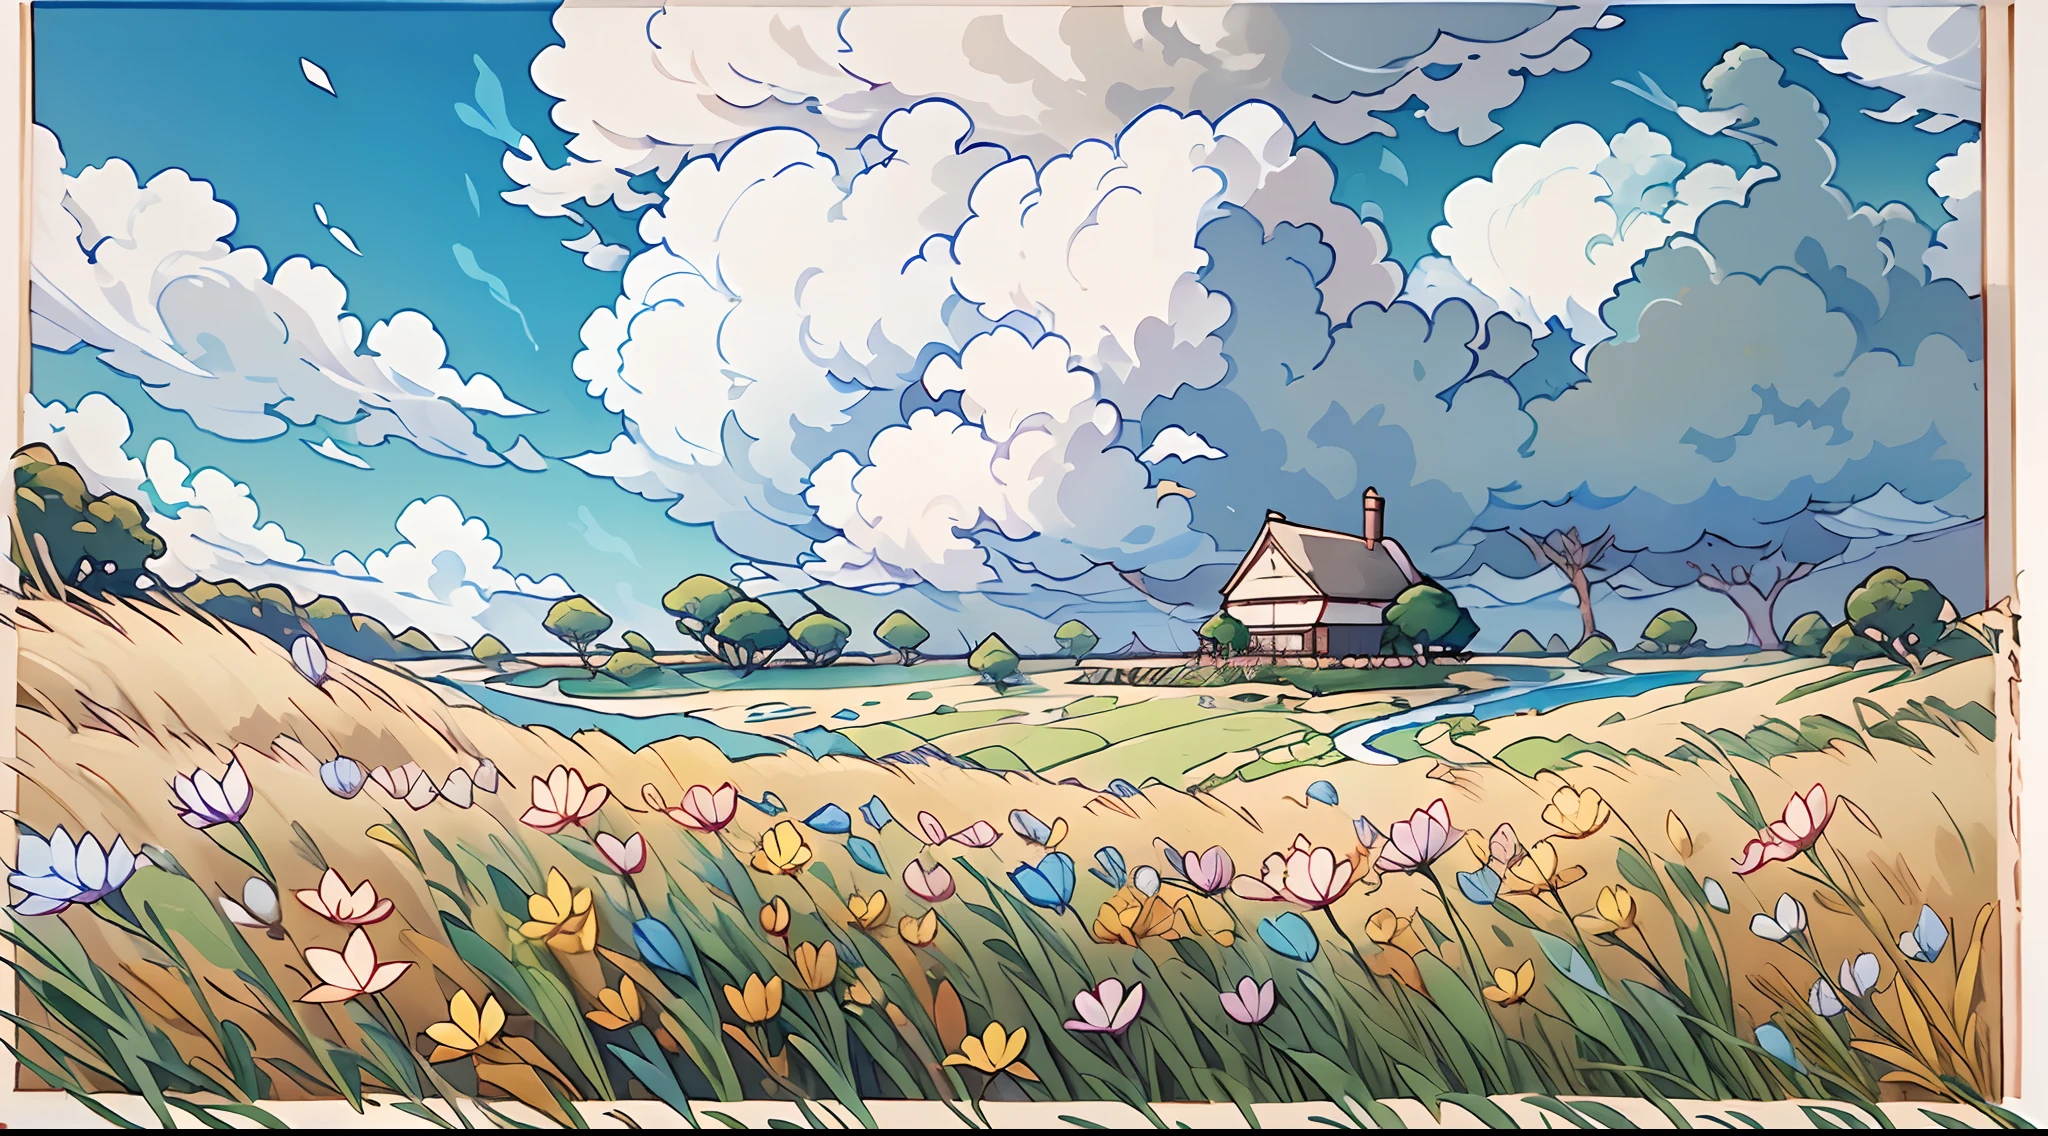 Realista, Auténtico, hermoso y sorprendente paisaje pintura al óleo Studio Ghibli Hayao Miyazaki&#39;Pastizal de pétalos con cielo azul y nubes blancas --v6